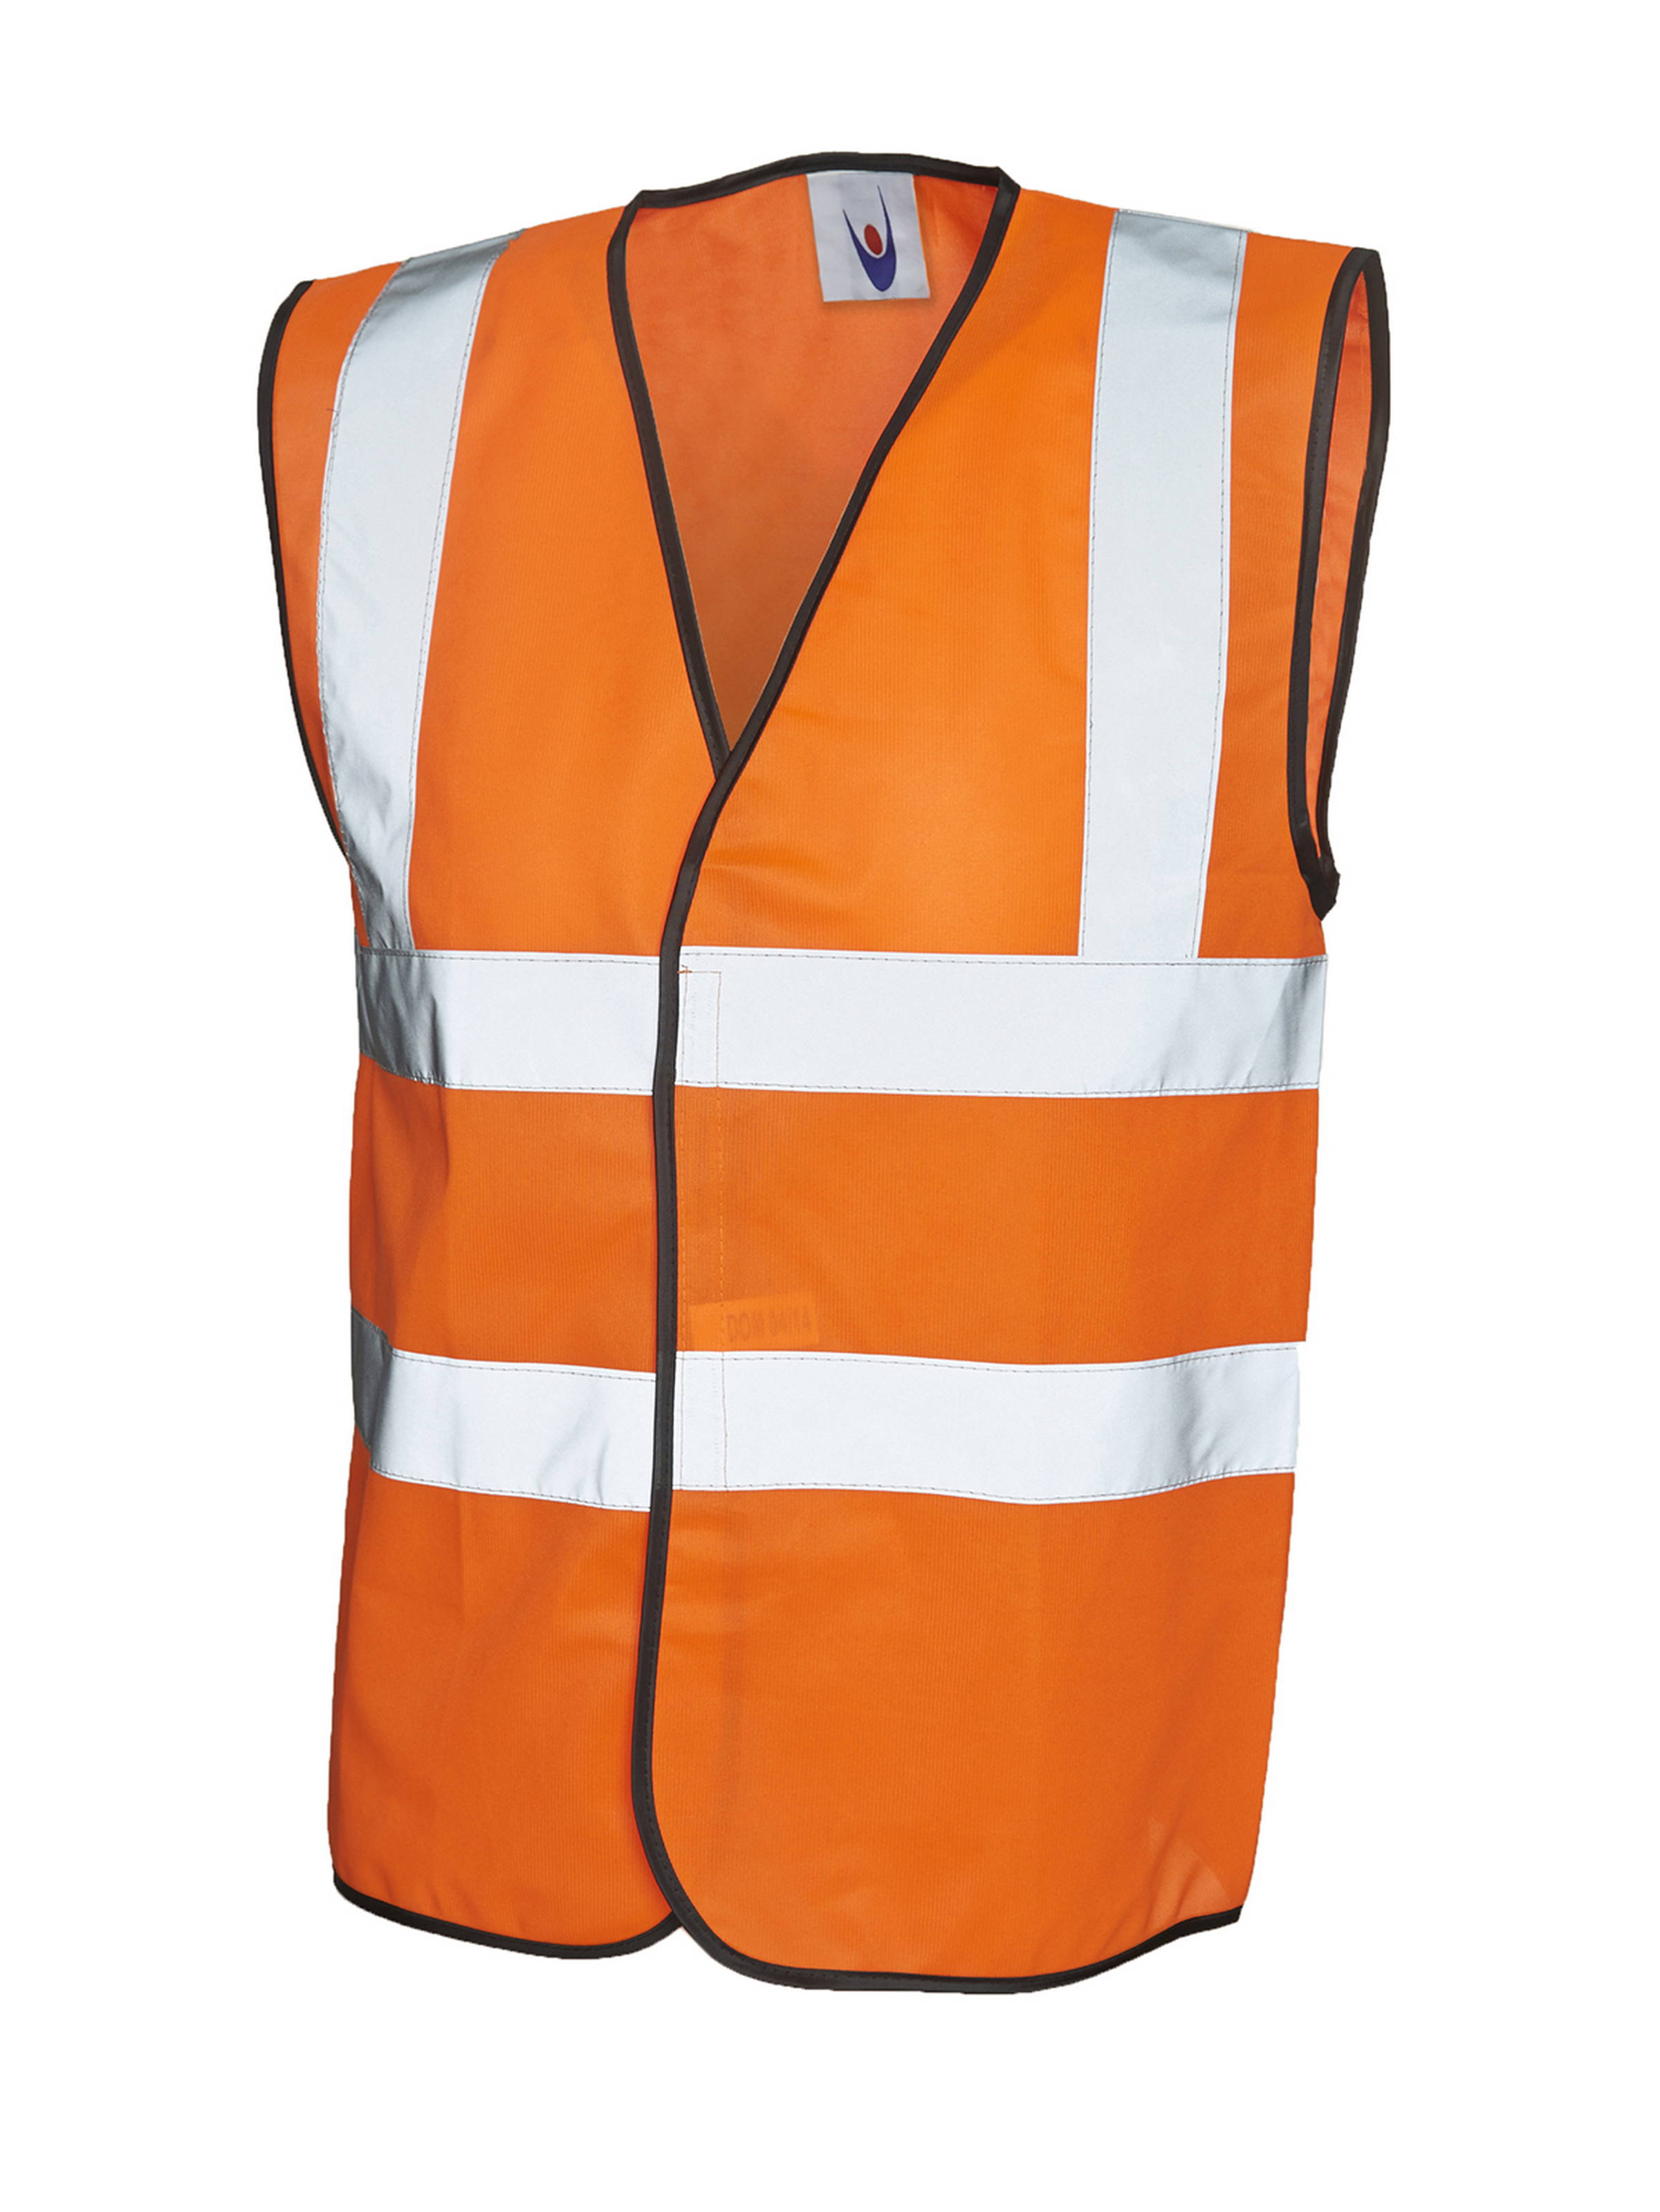 UC801 Sleeveless Safety Waist Coat